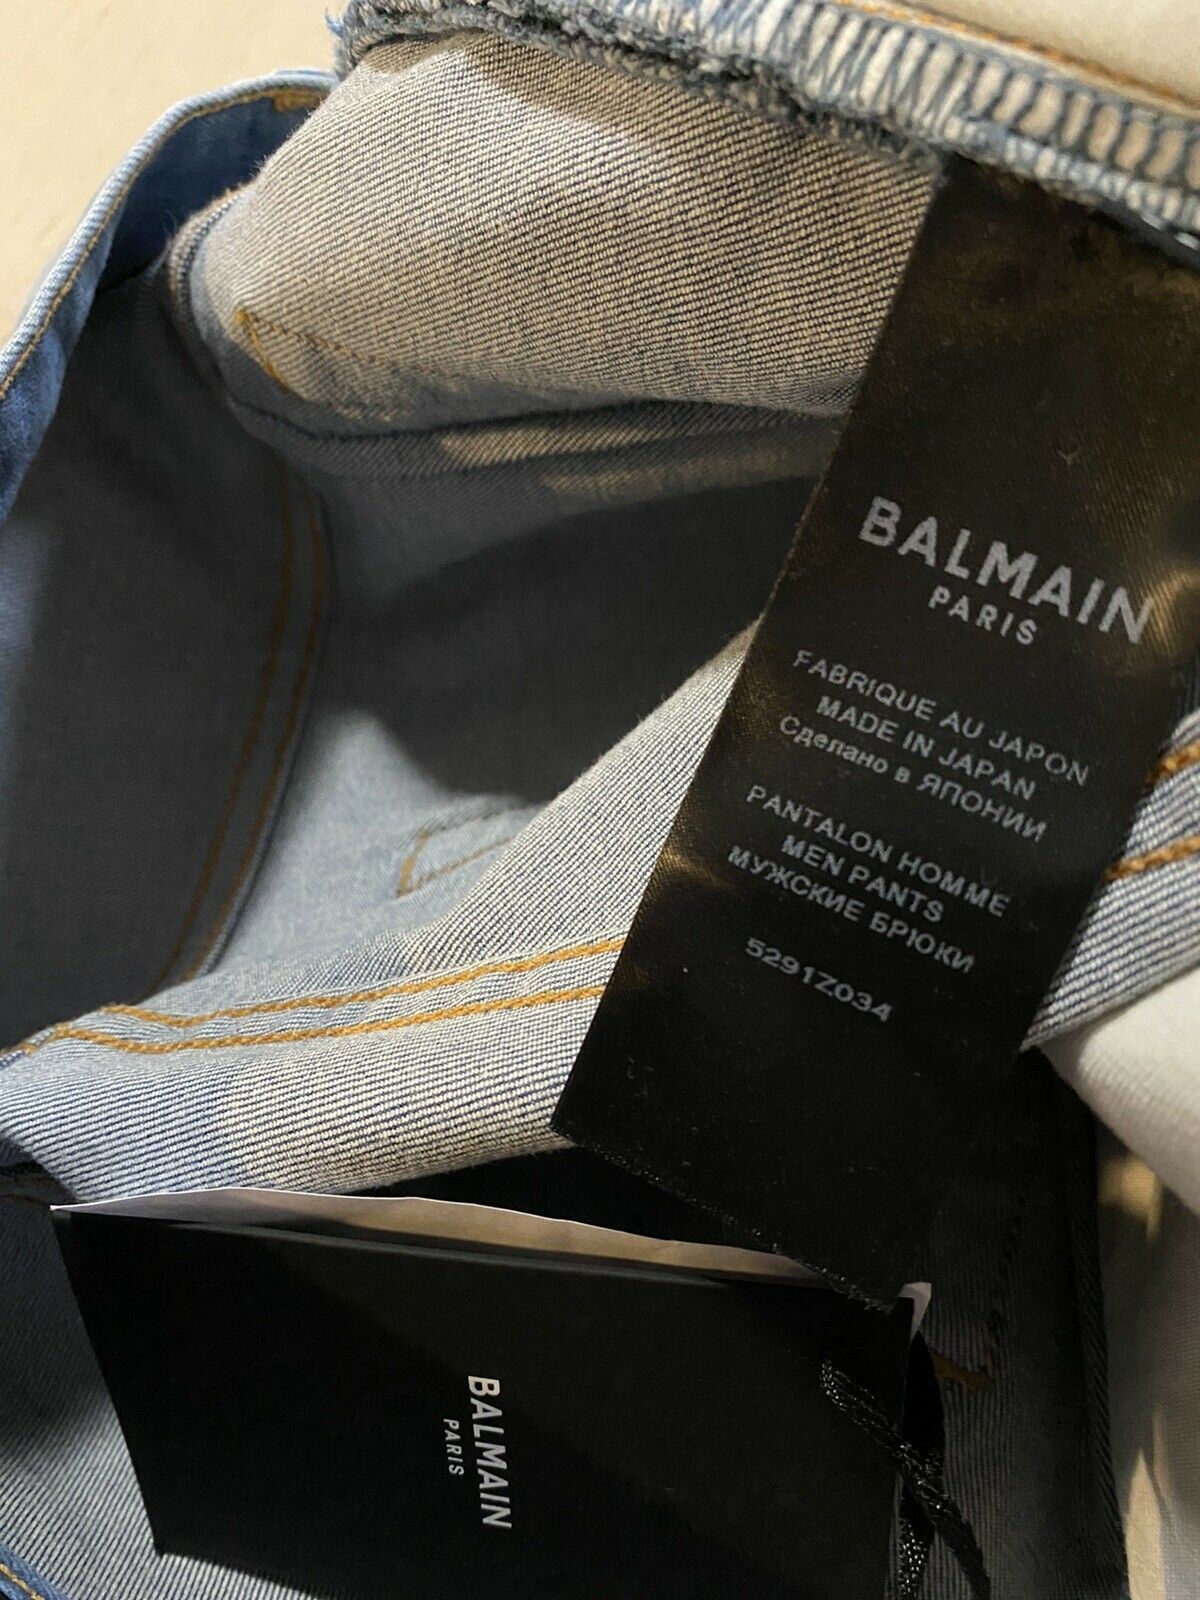 СЗТ $995 Balmain Мужские джинсы с потертостями по бокам, синие 30 (размер 32)